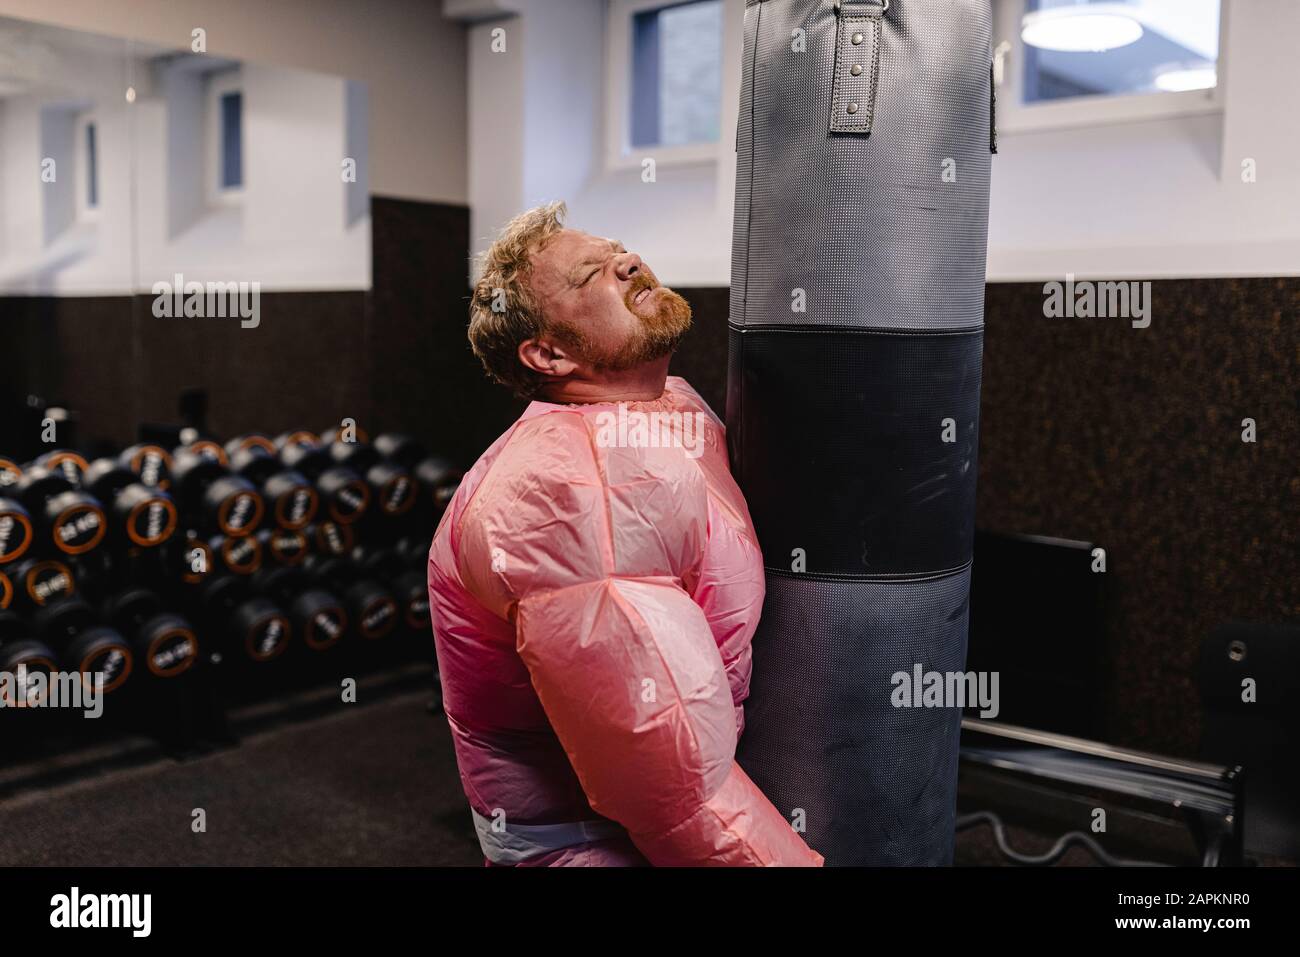 Mann mit pinkfarbenem Bodybuilder-Kostüm in der Sporthalle Stockfoto